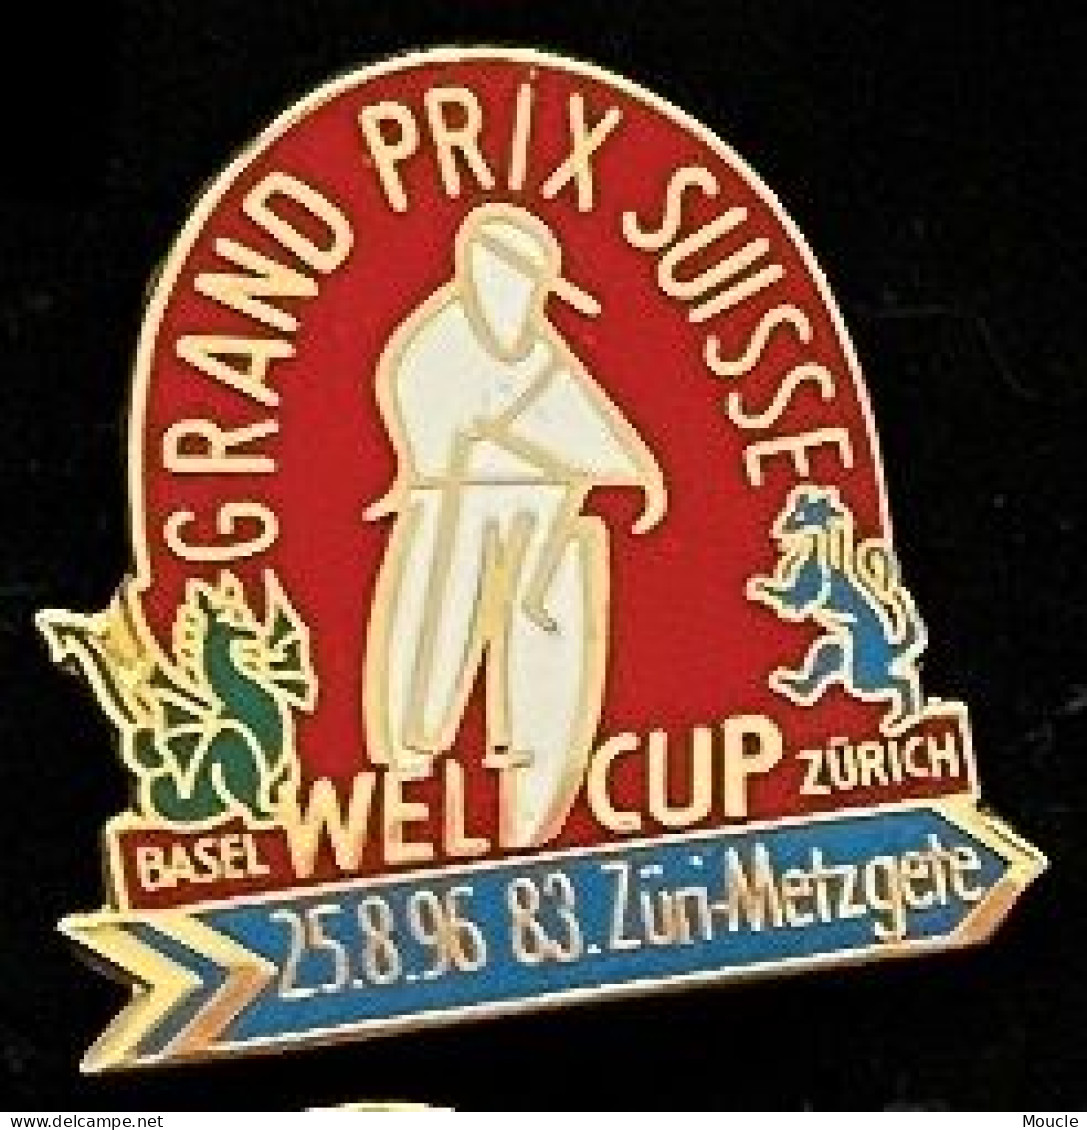 GRAND PRIX DE SUISSE CYCLISTE - CYCLISME - VELO - WELT CUP - BASEL - ZÜRICH - SCHWEIZ - 25.8.95 - SWITZERLAND -    (33) - Radsport